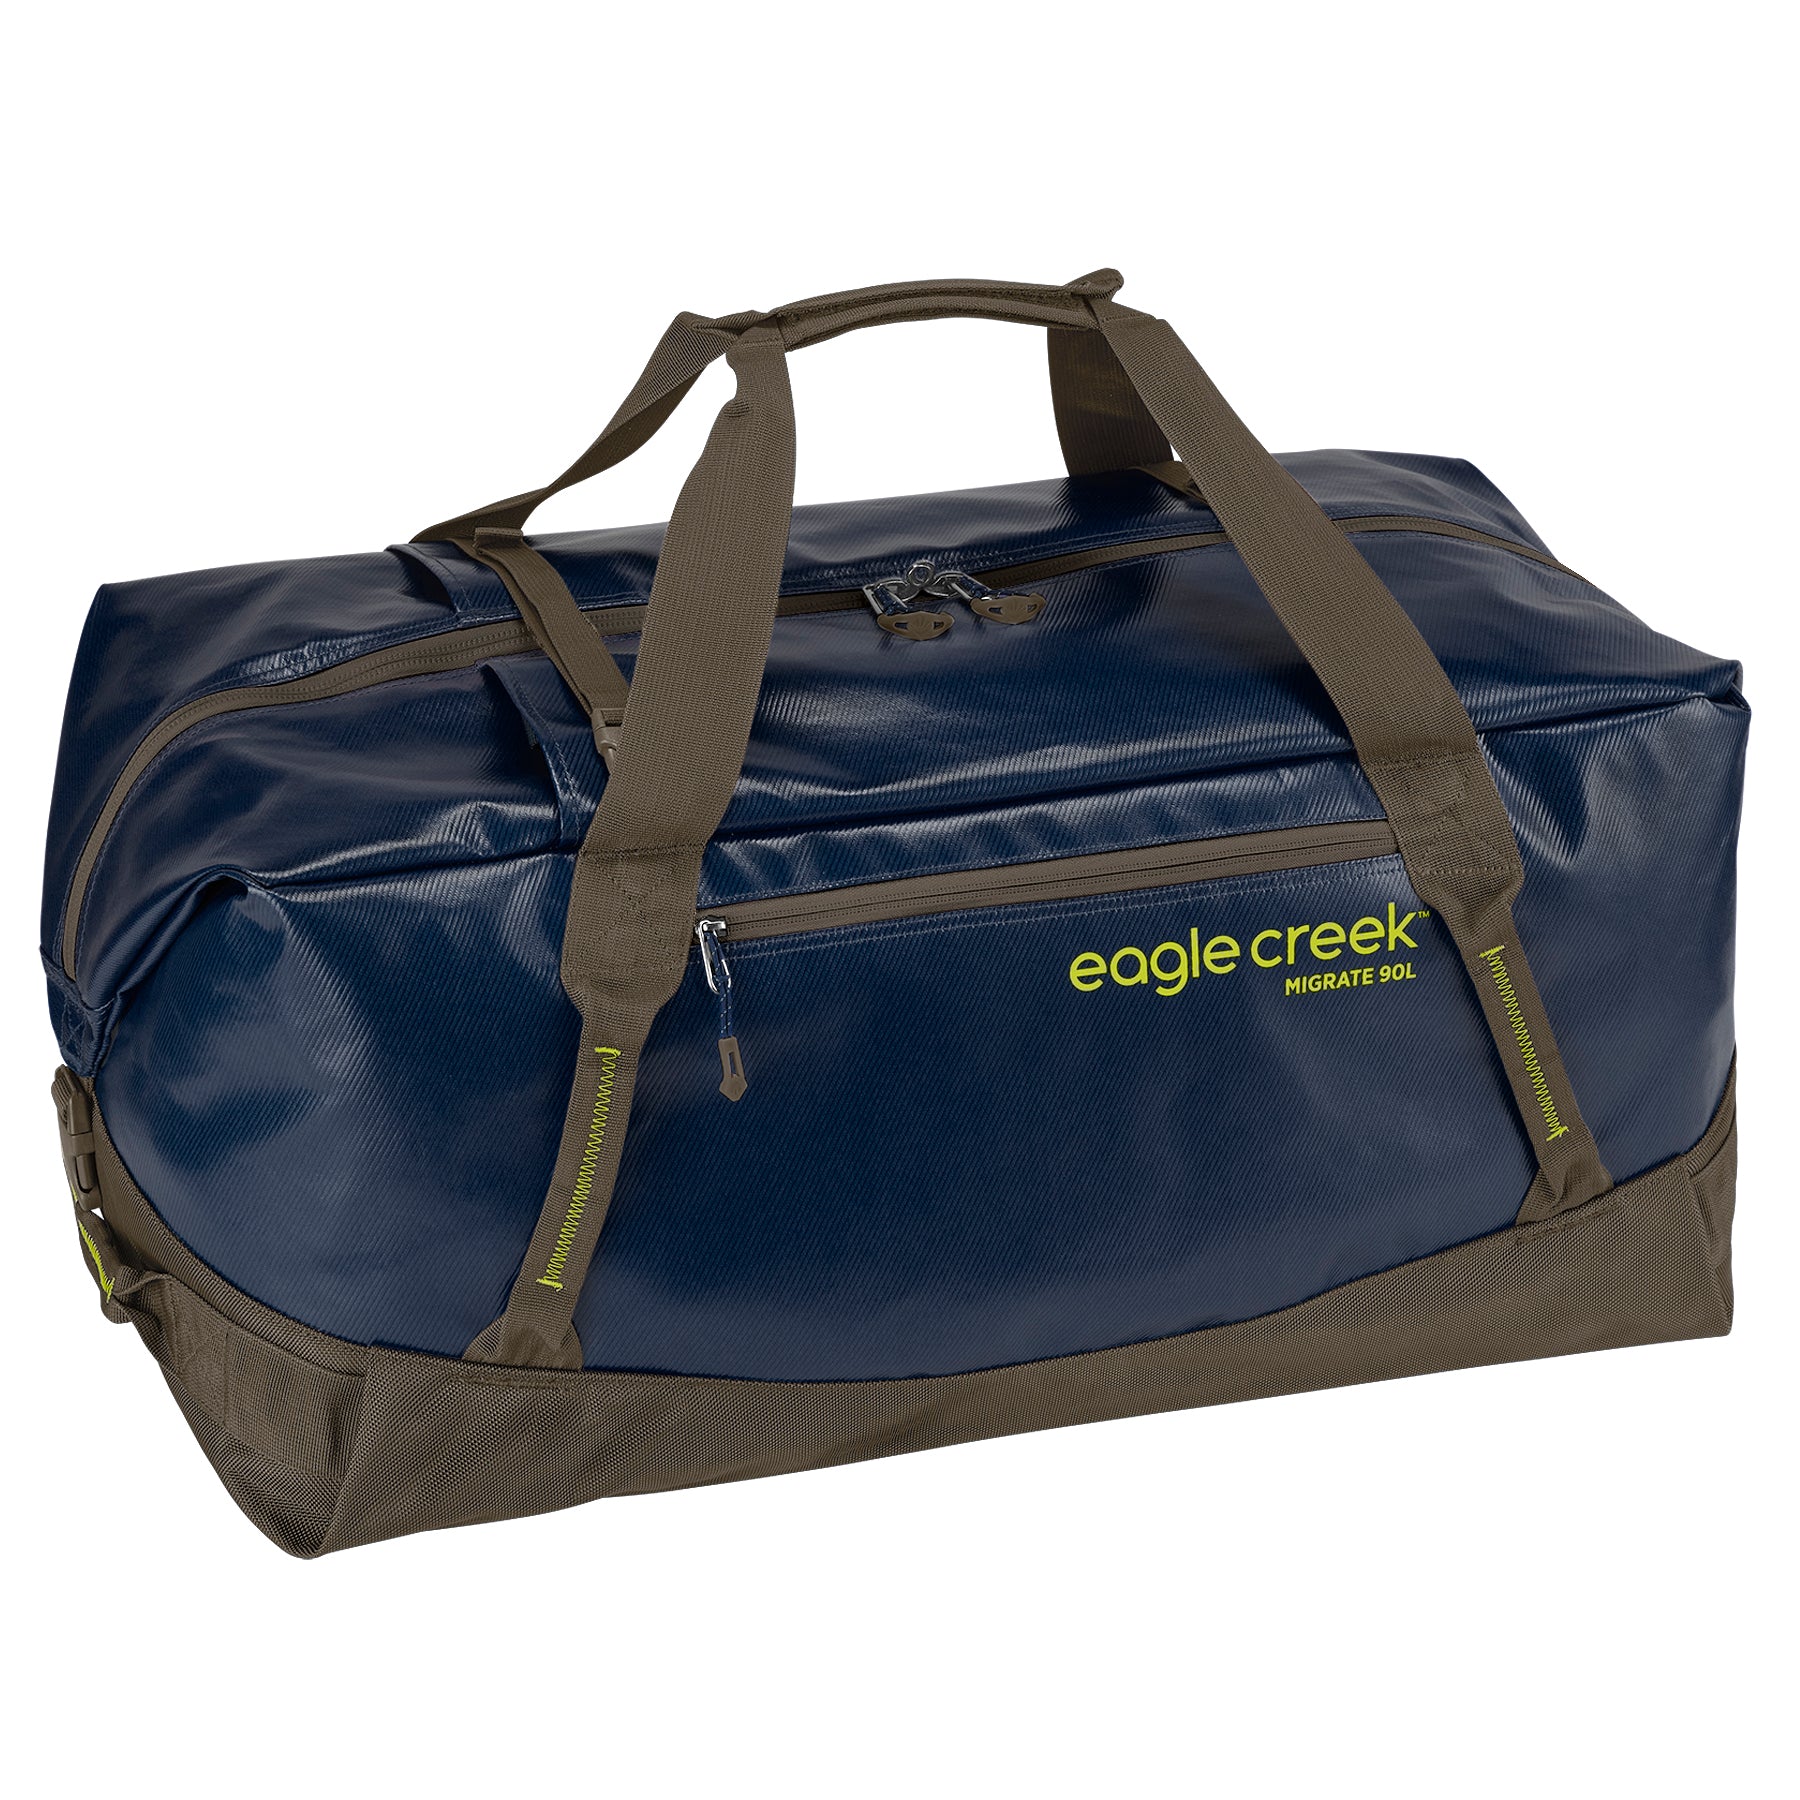 Migrate Duffel Bag 90L | Shop Eagle Creek